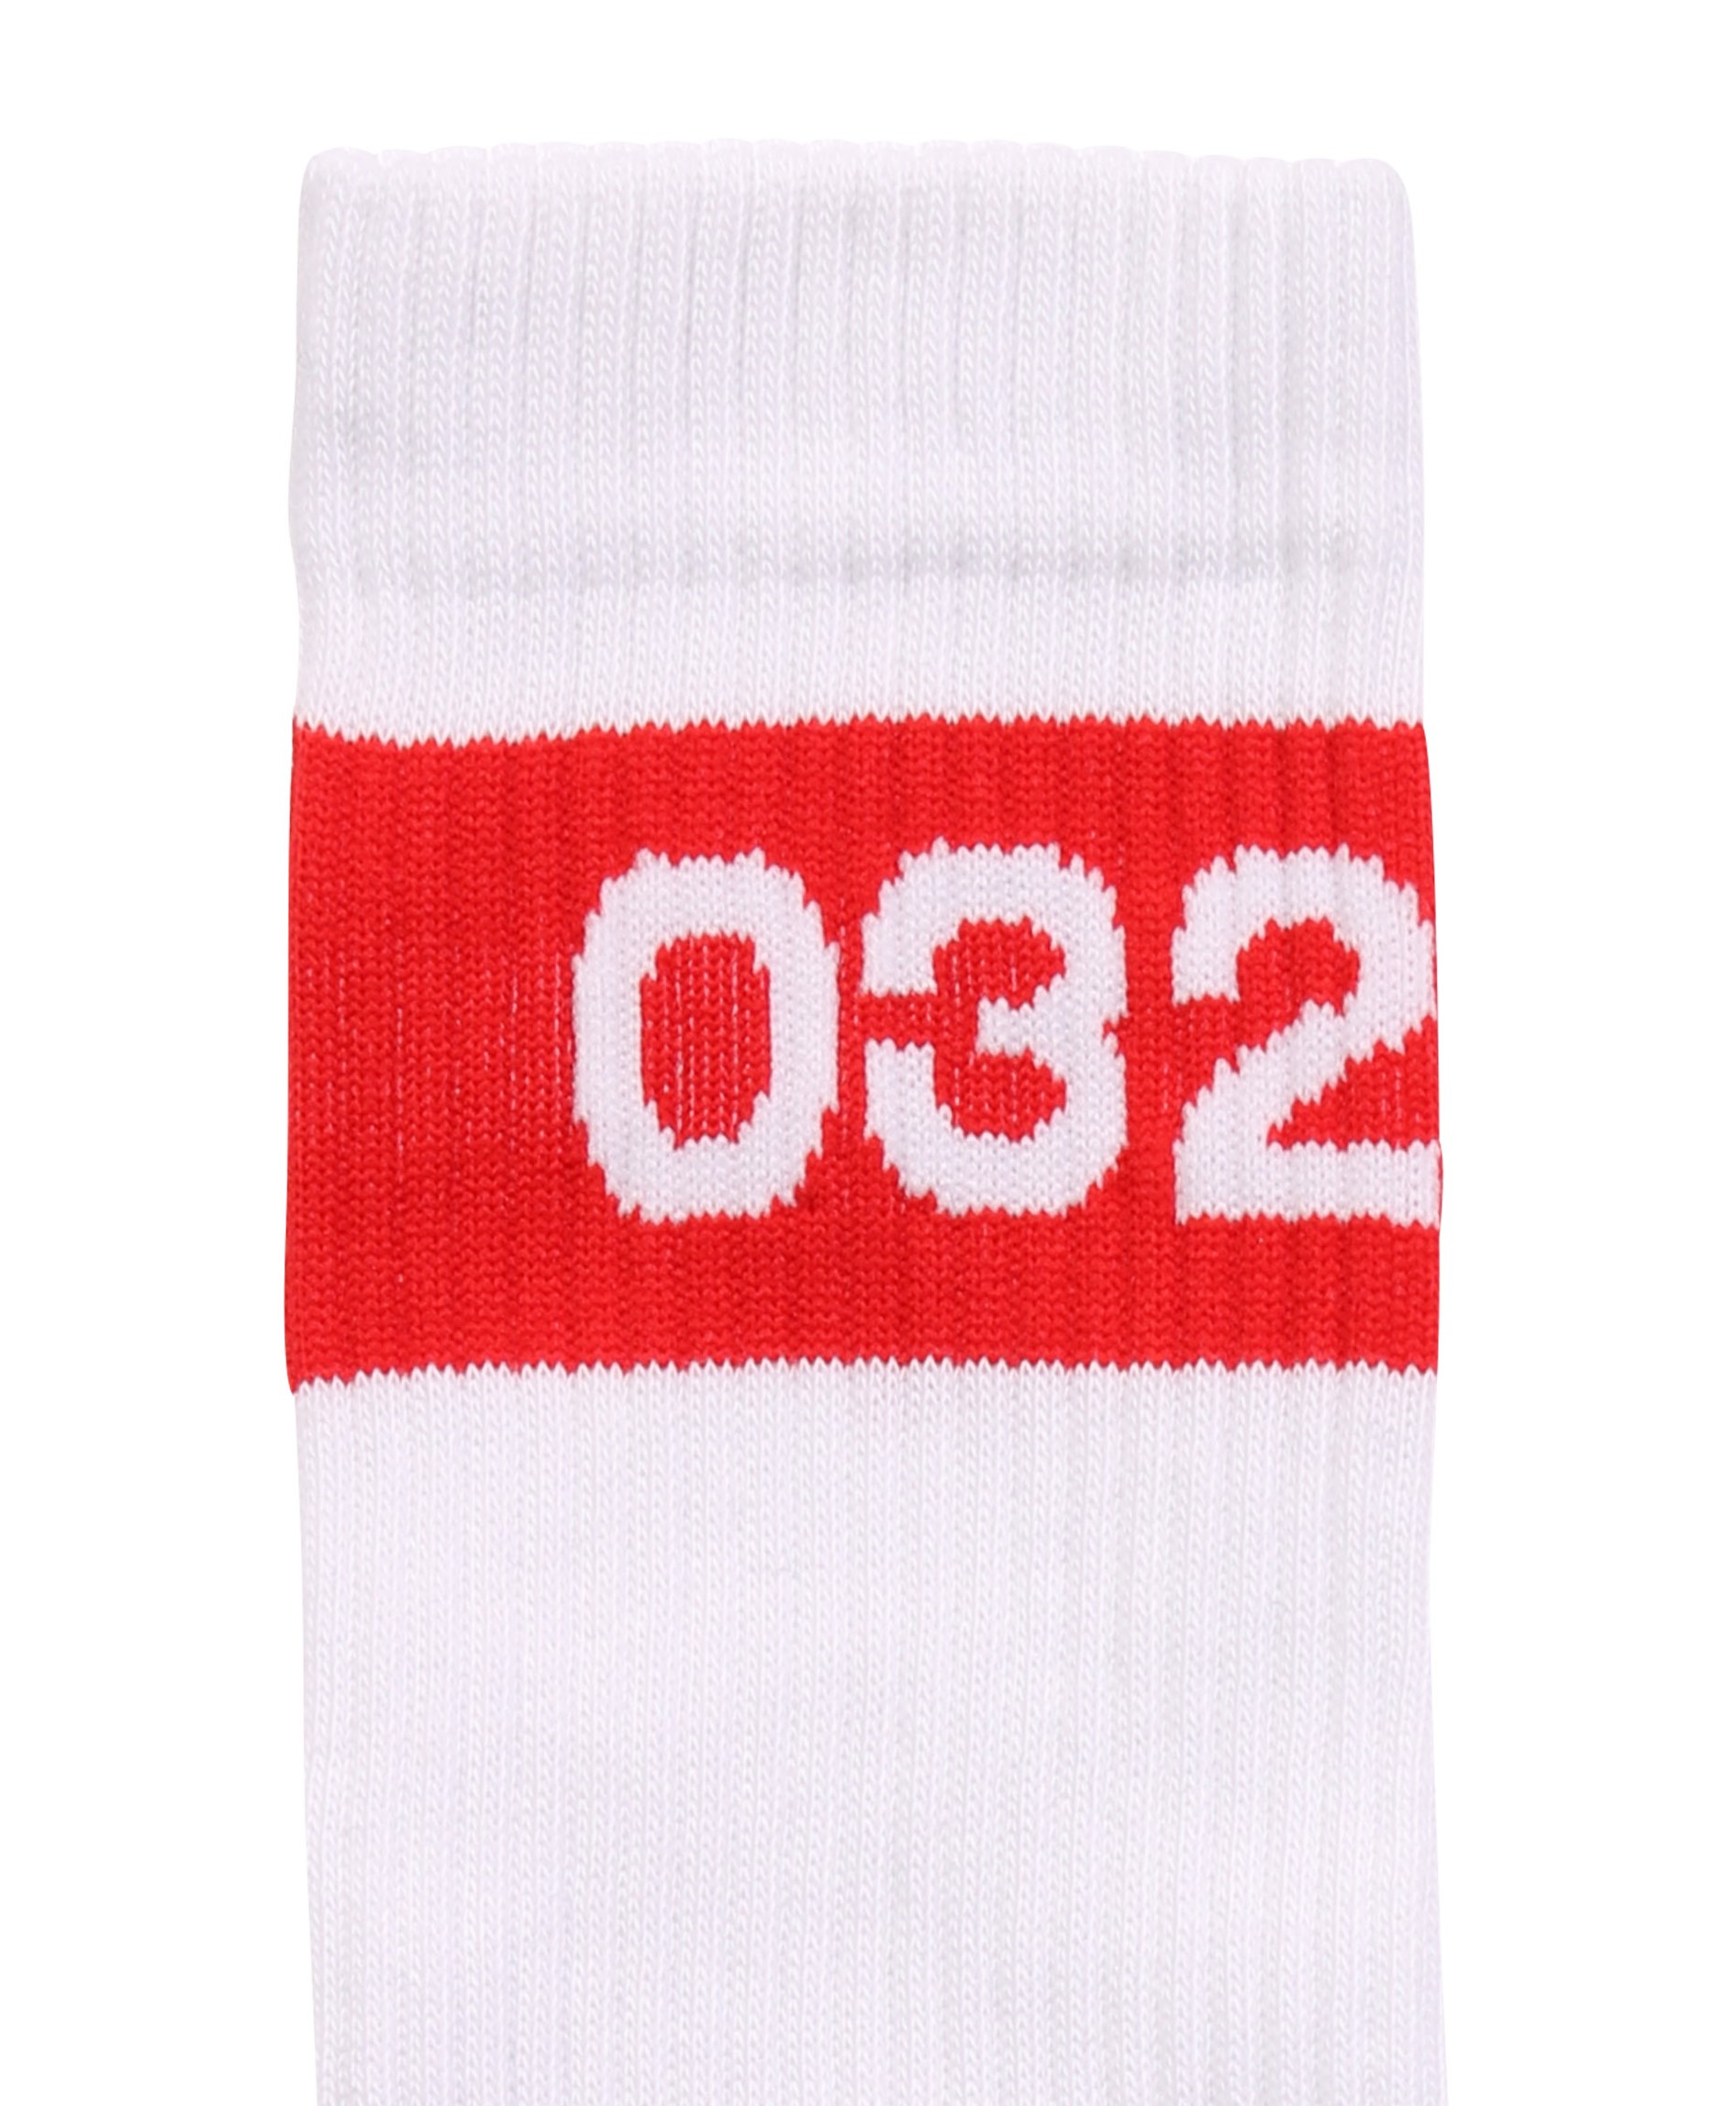 032c Tape Socks in White 35-39